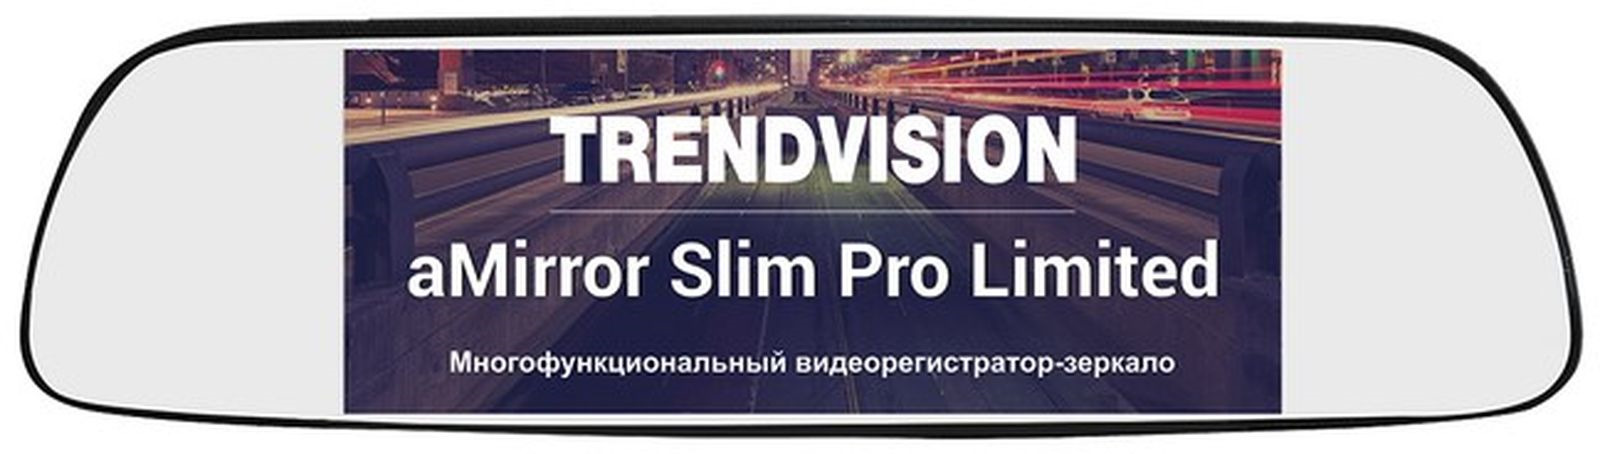 Видеорегистратор-зеркало TrendVision aMirror Slim Pro Limited